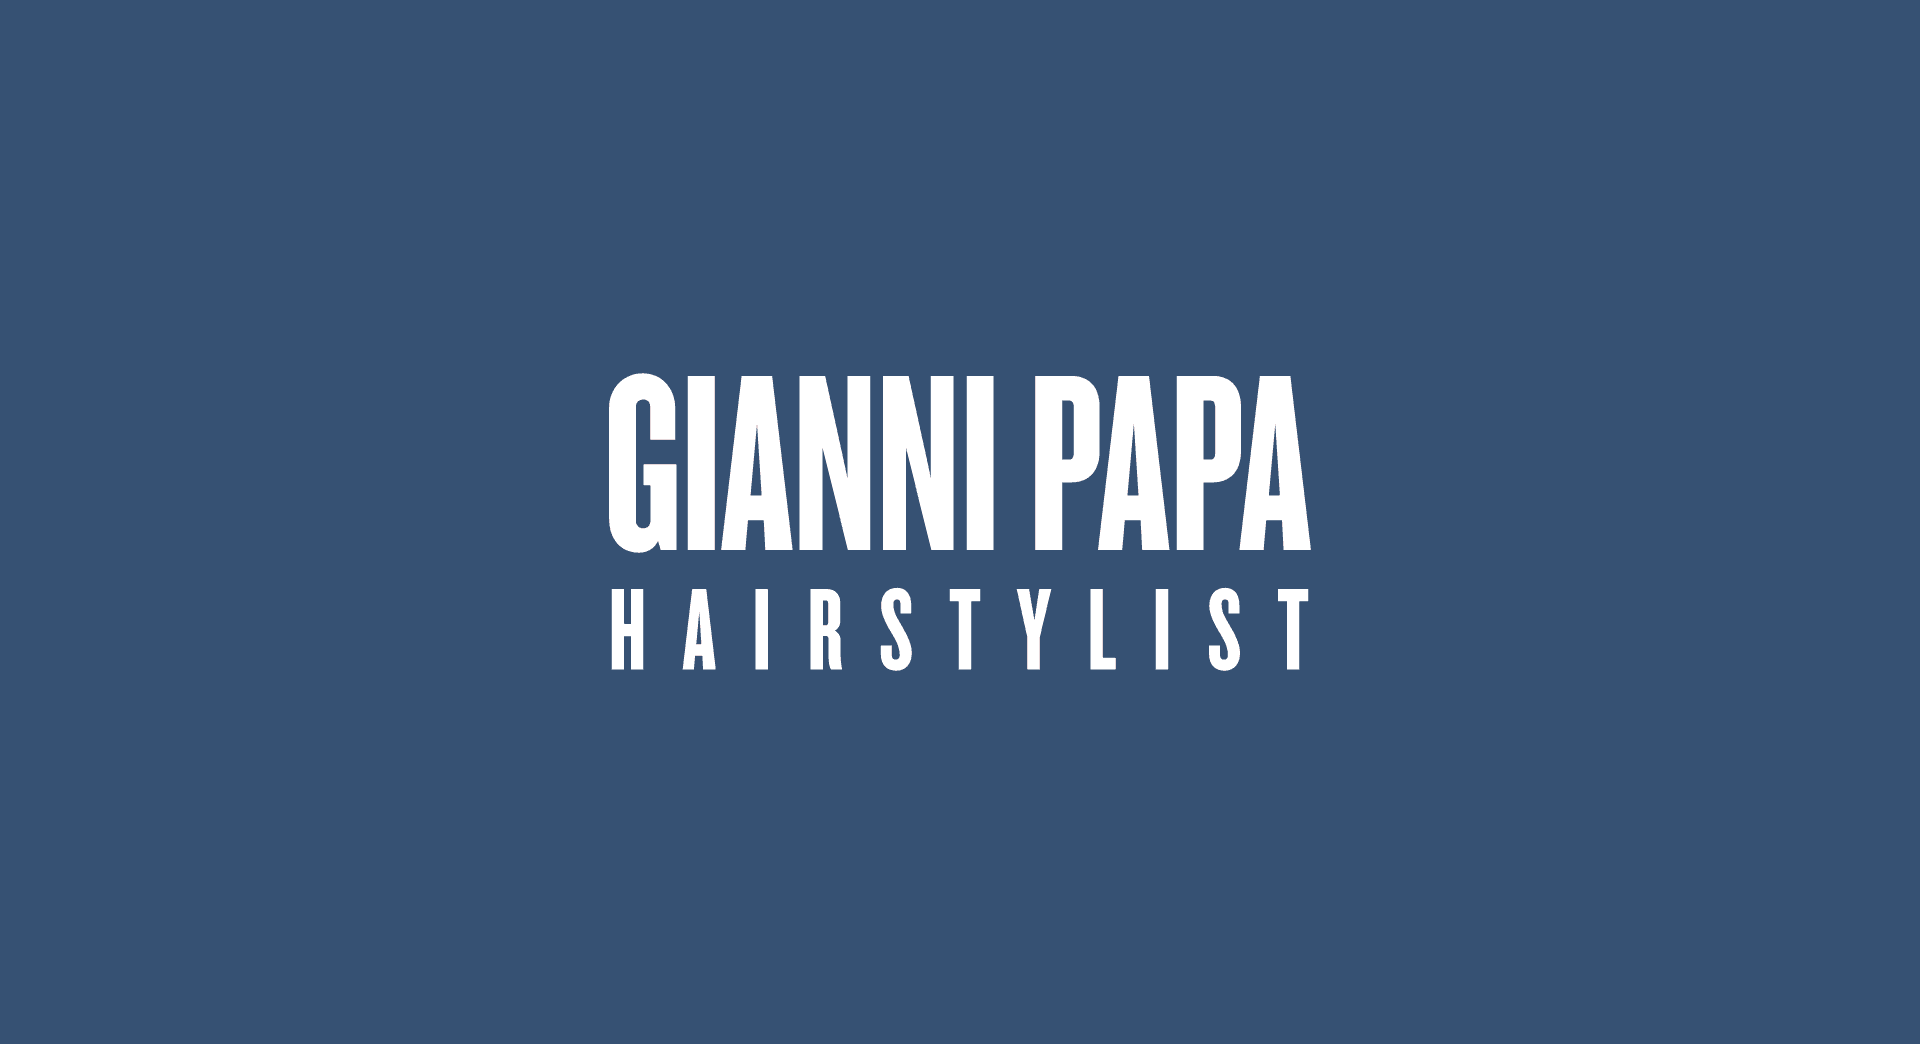 2018 für Gianni Papa